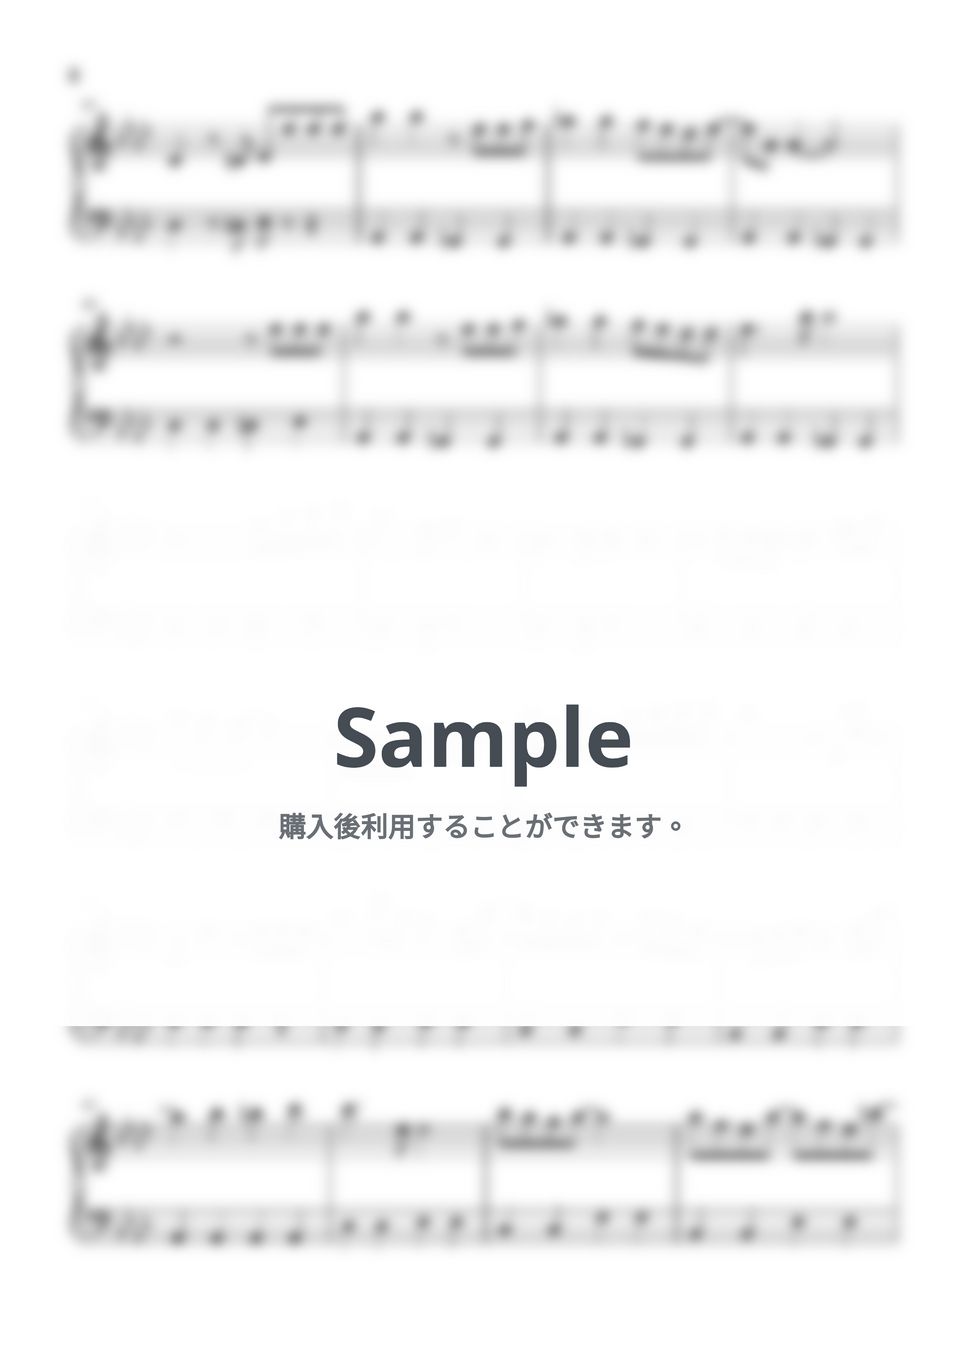 P丸様 - シル・ヴ・プレジデント (ピアノ初級ソロ) by pianon